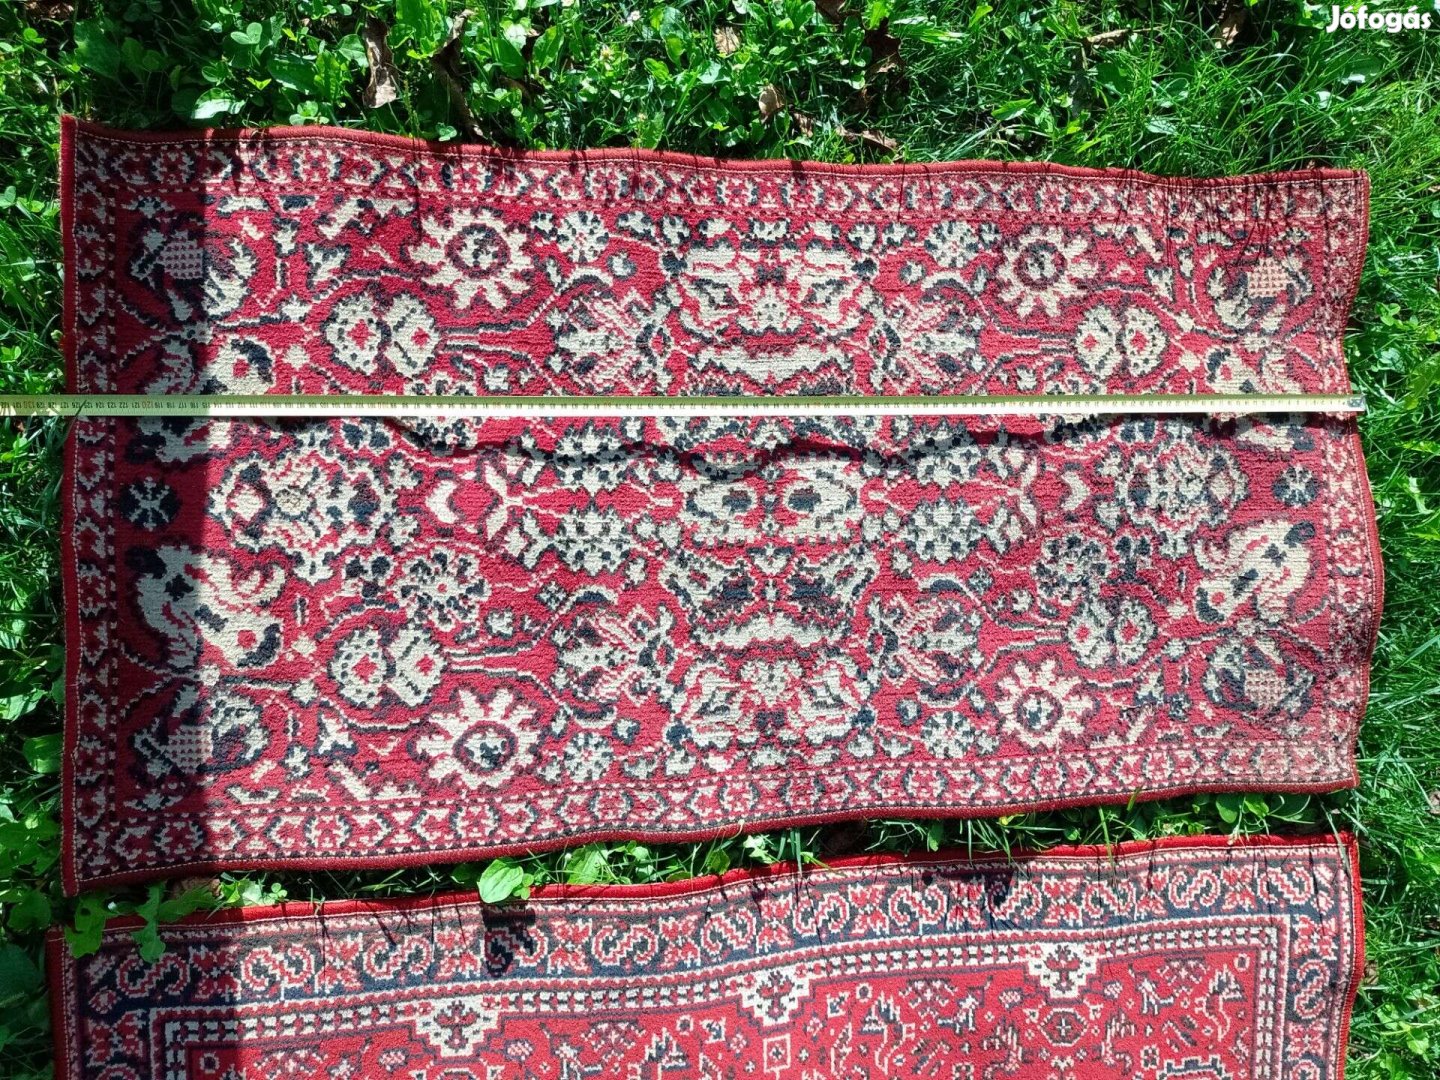 Eladó retro antik perzsaszőnyeg szőnyeg hagyatékból Zalaegerszegen